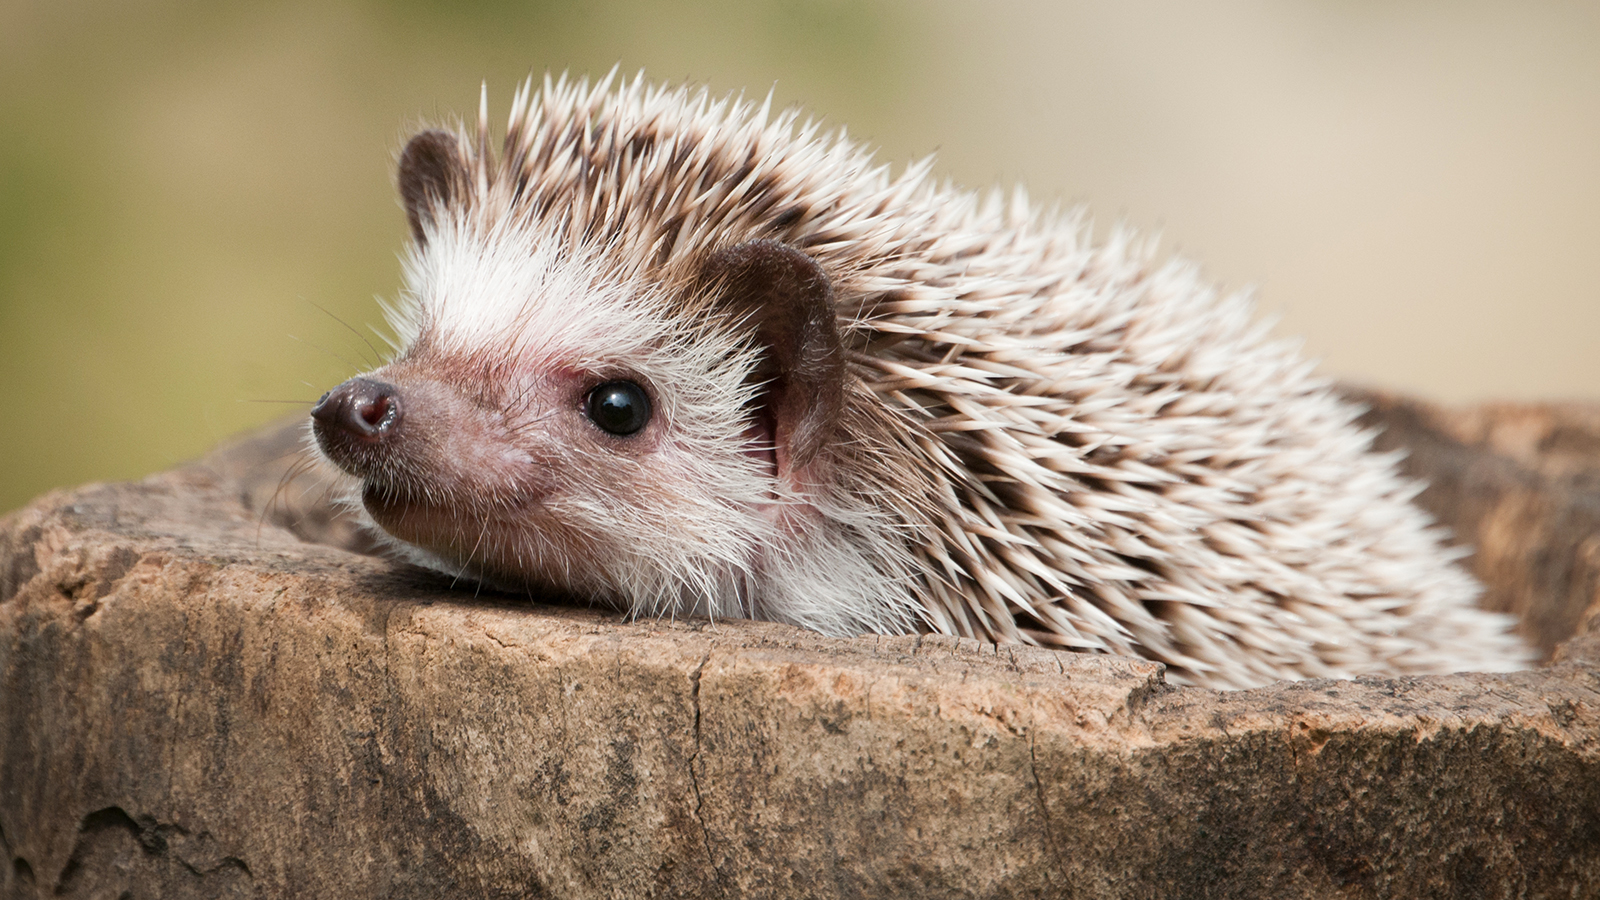 hedgehog closeup image